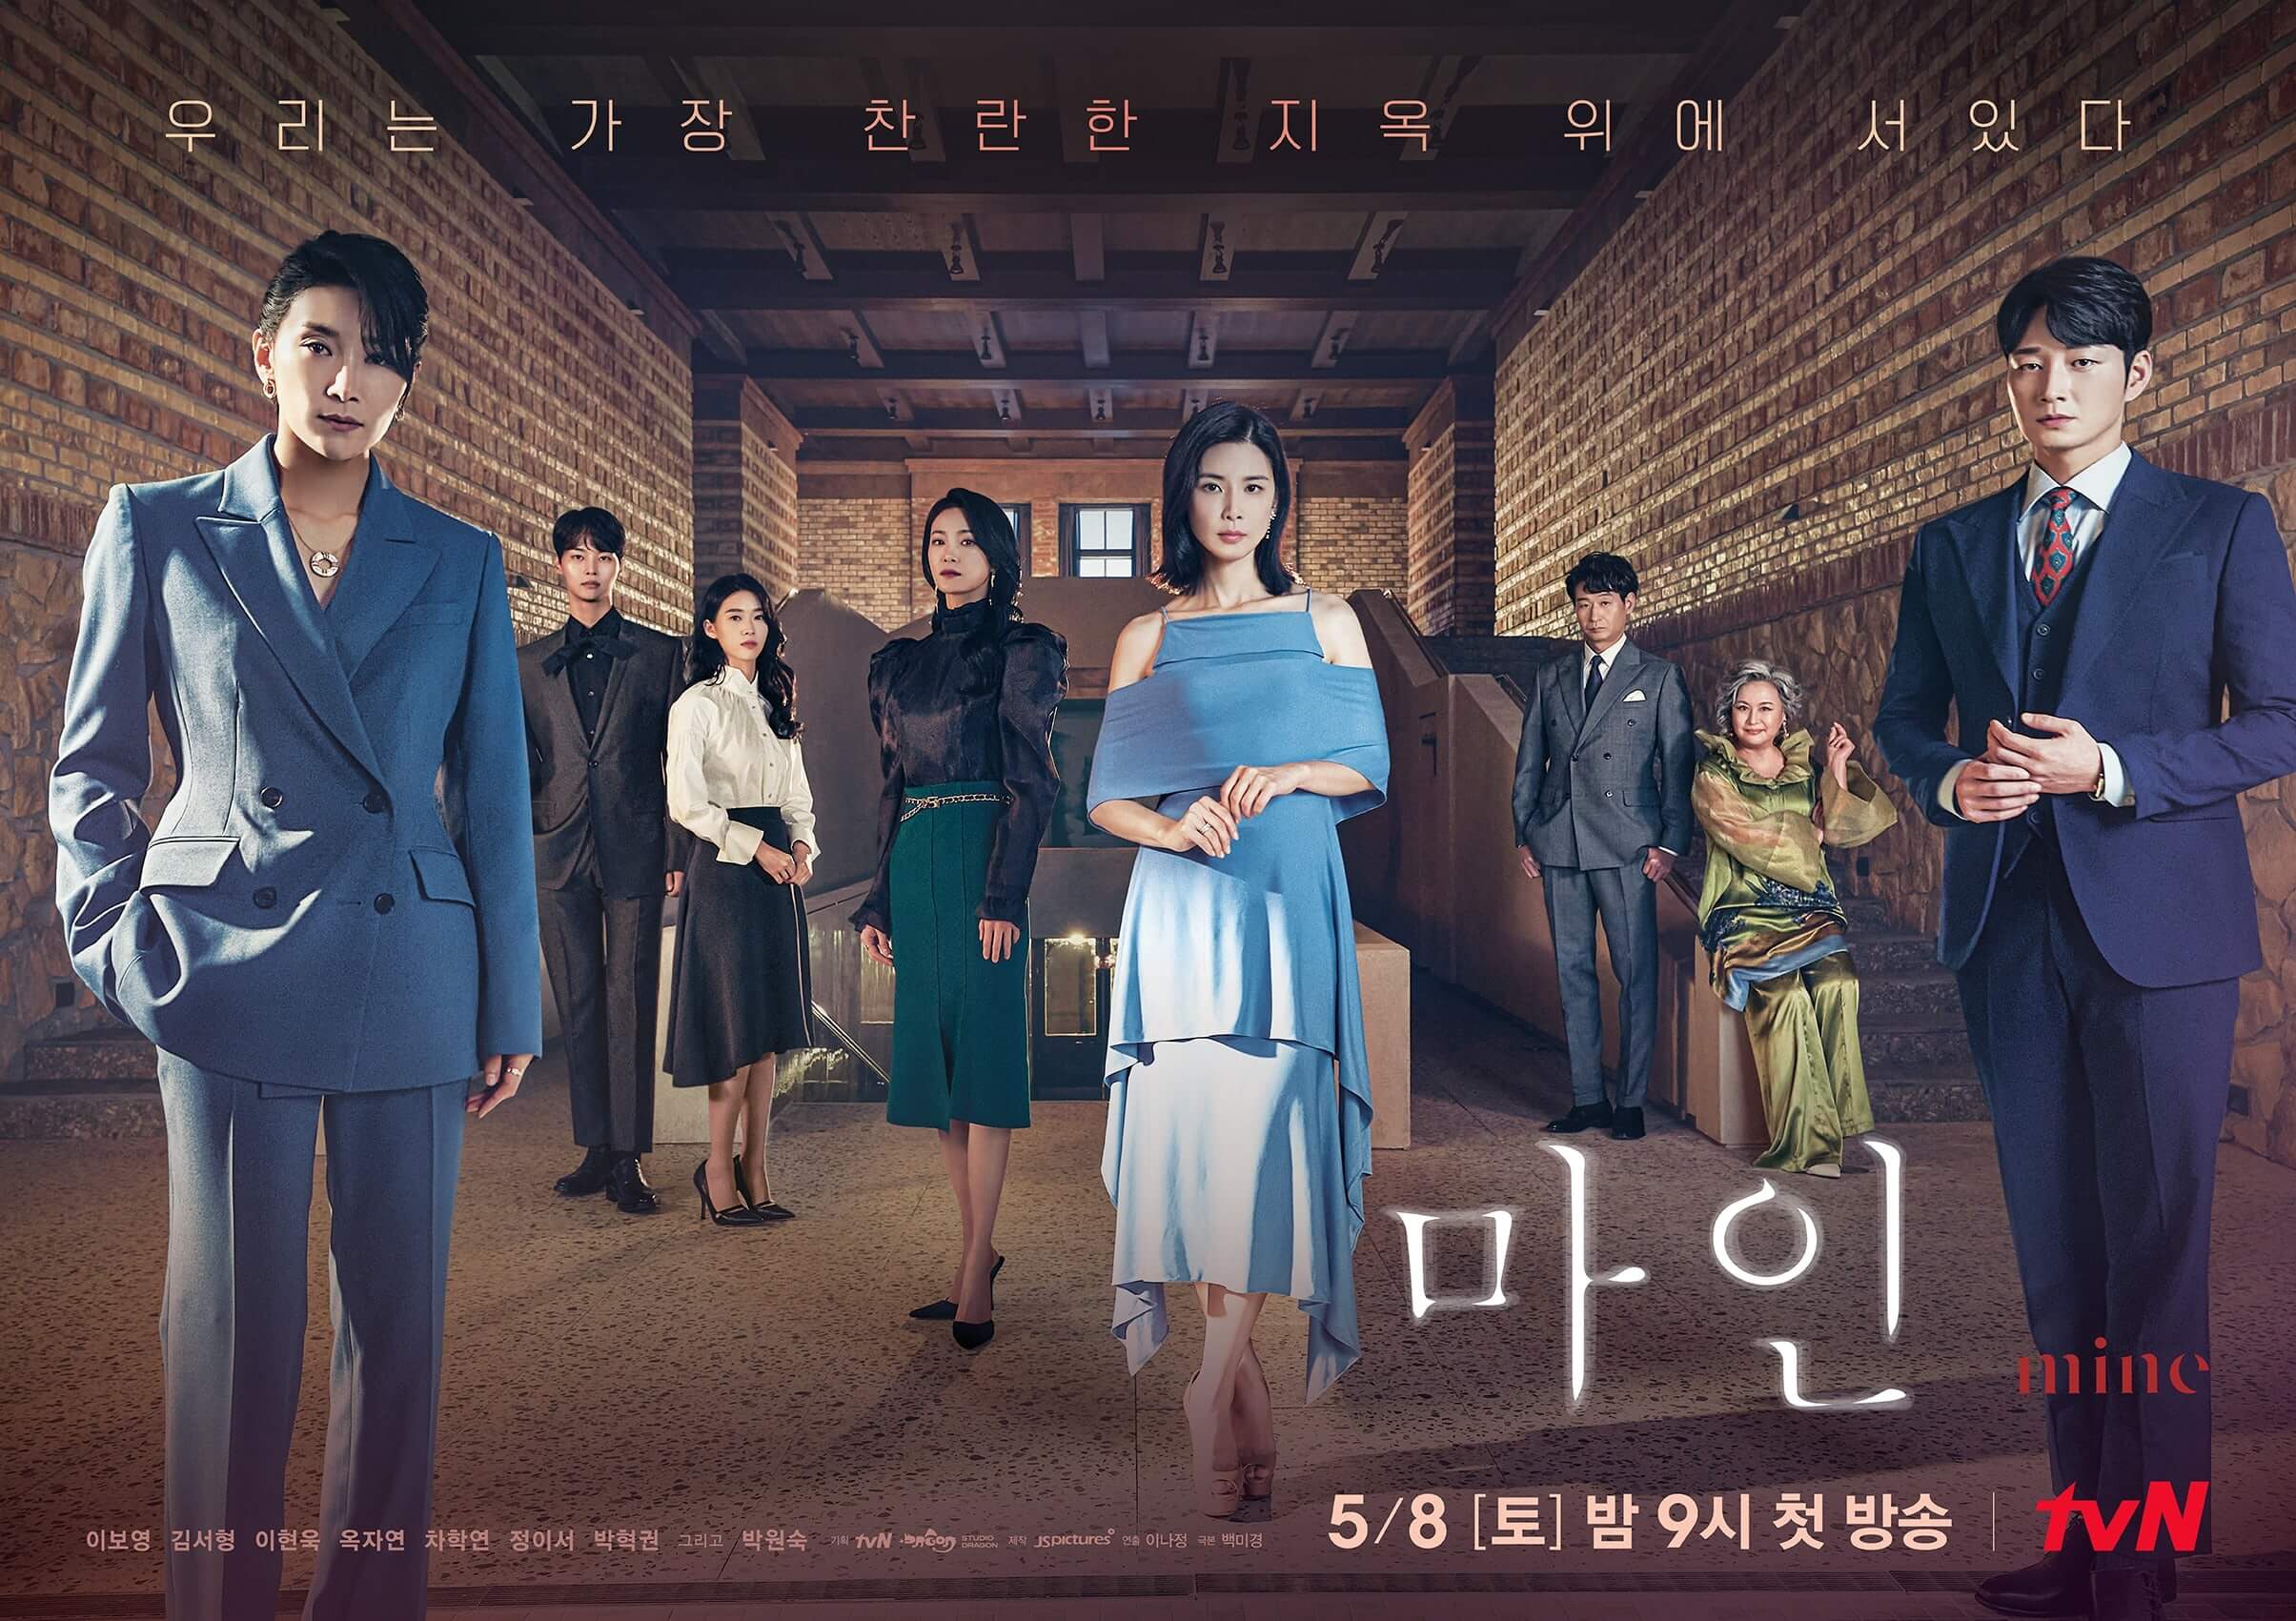 Estreno del K-Drama Es mío (Mine) en Netflix - CineAsia